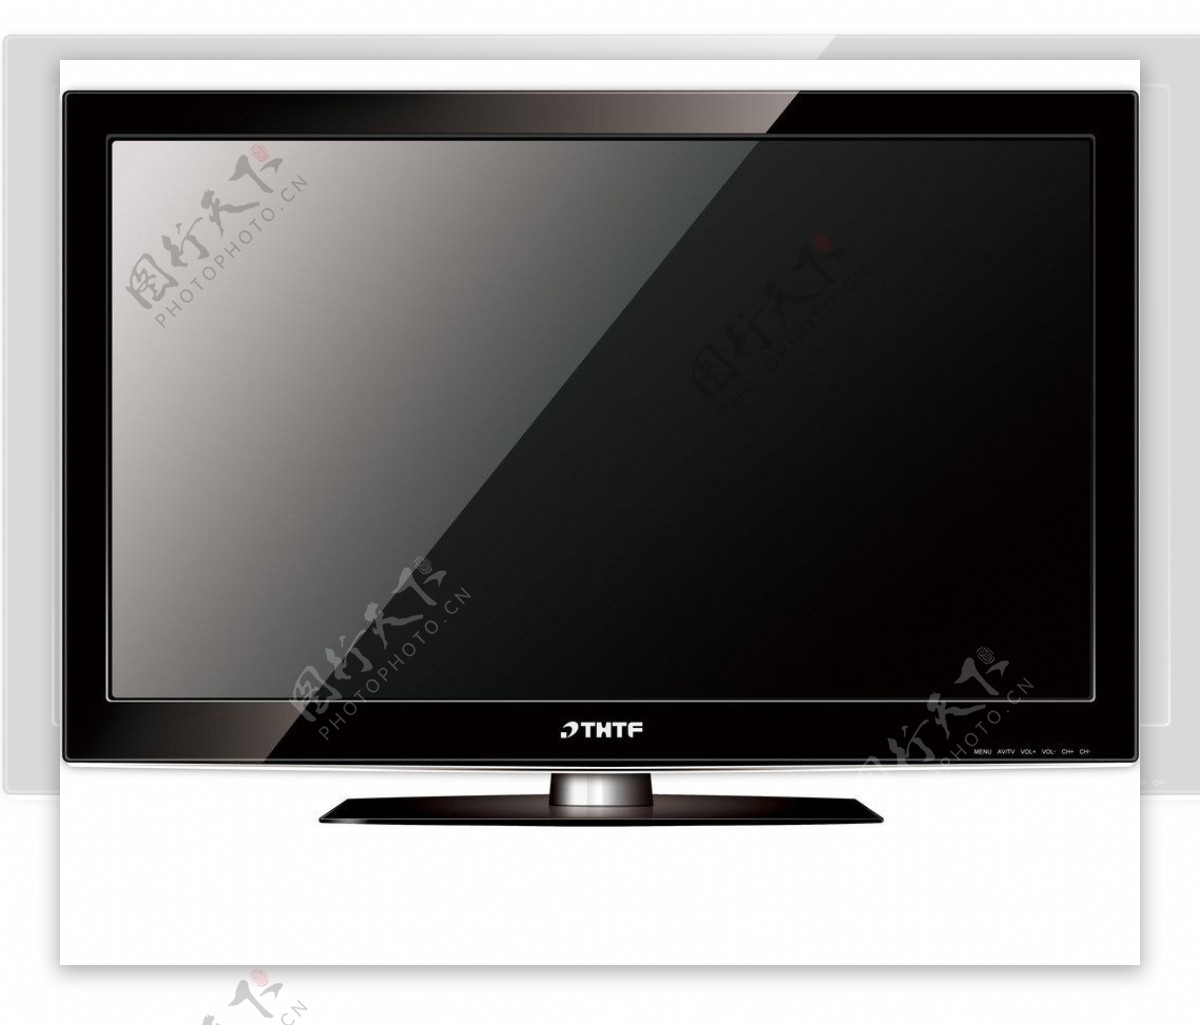 液晶电视LED电视图片